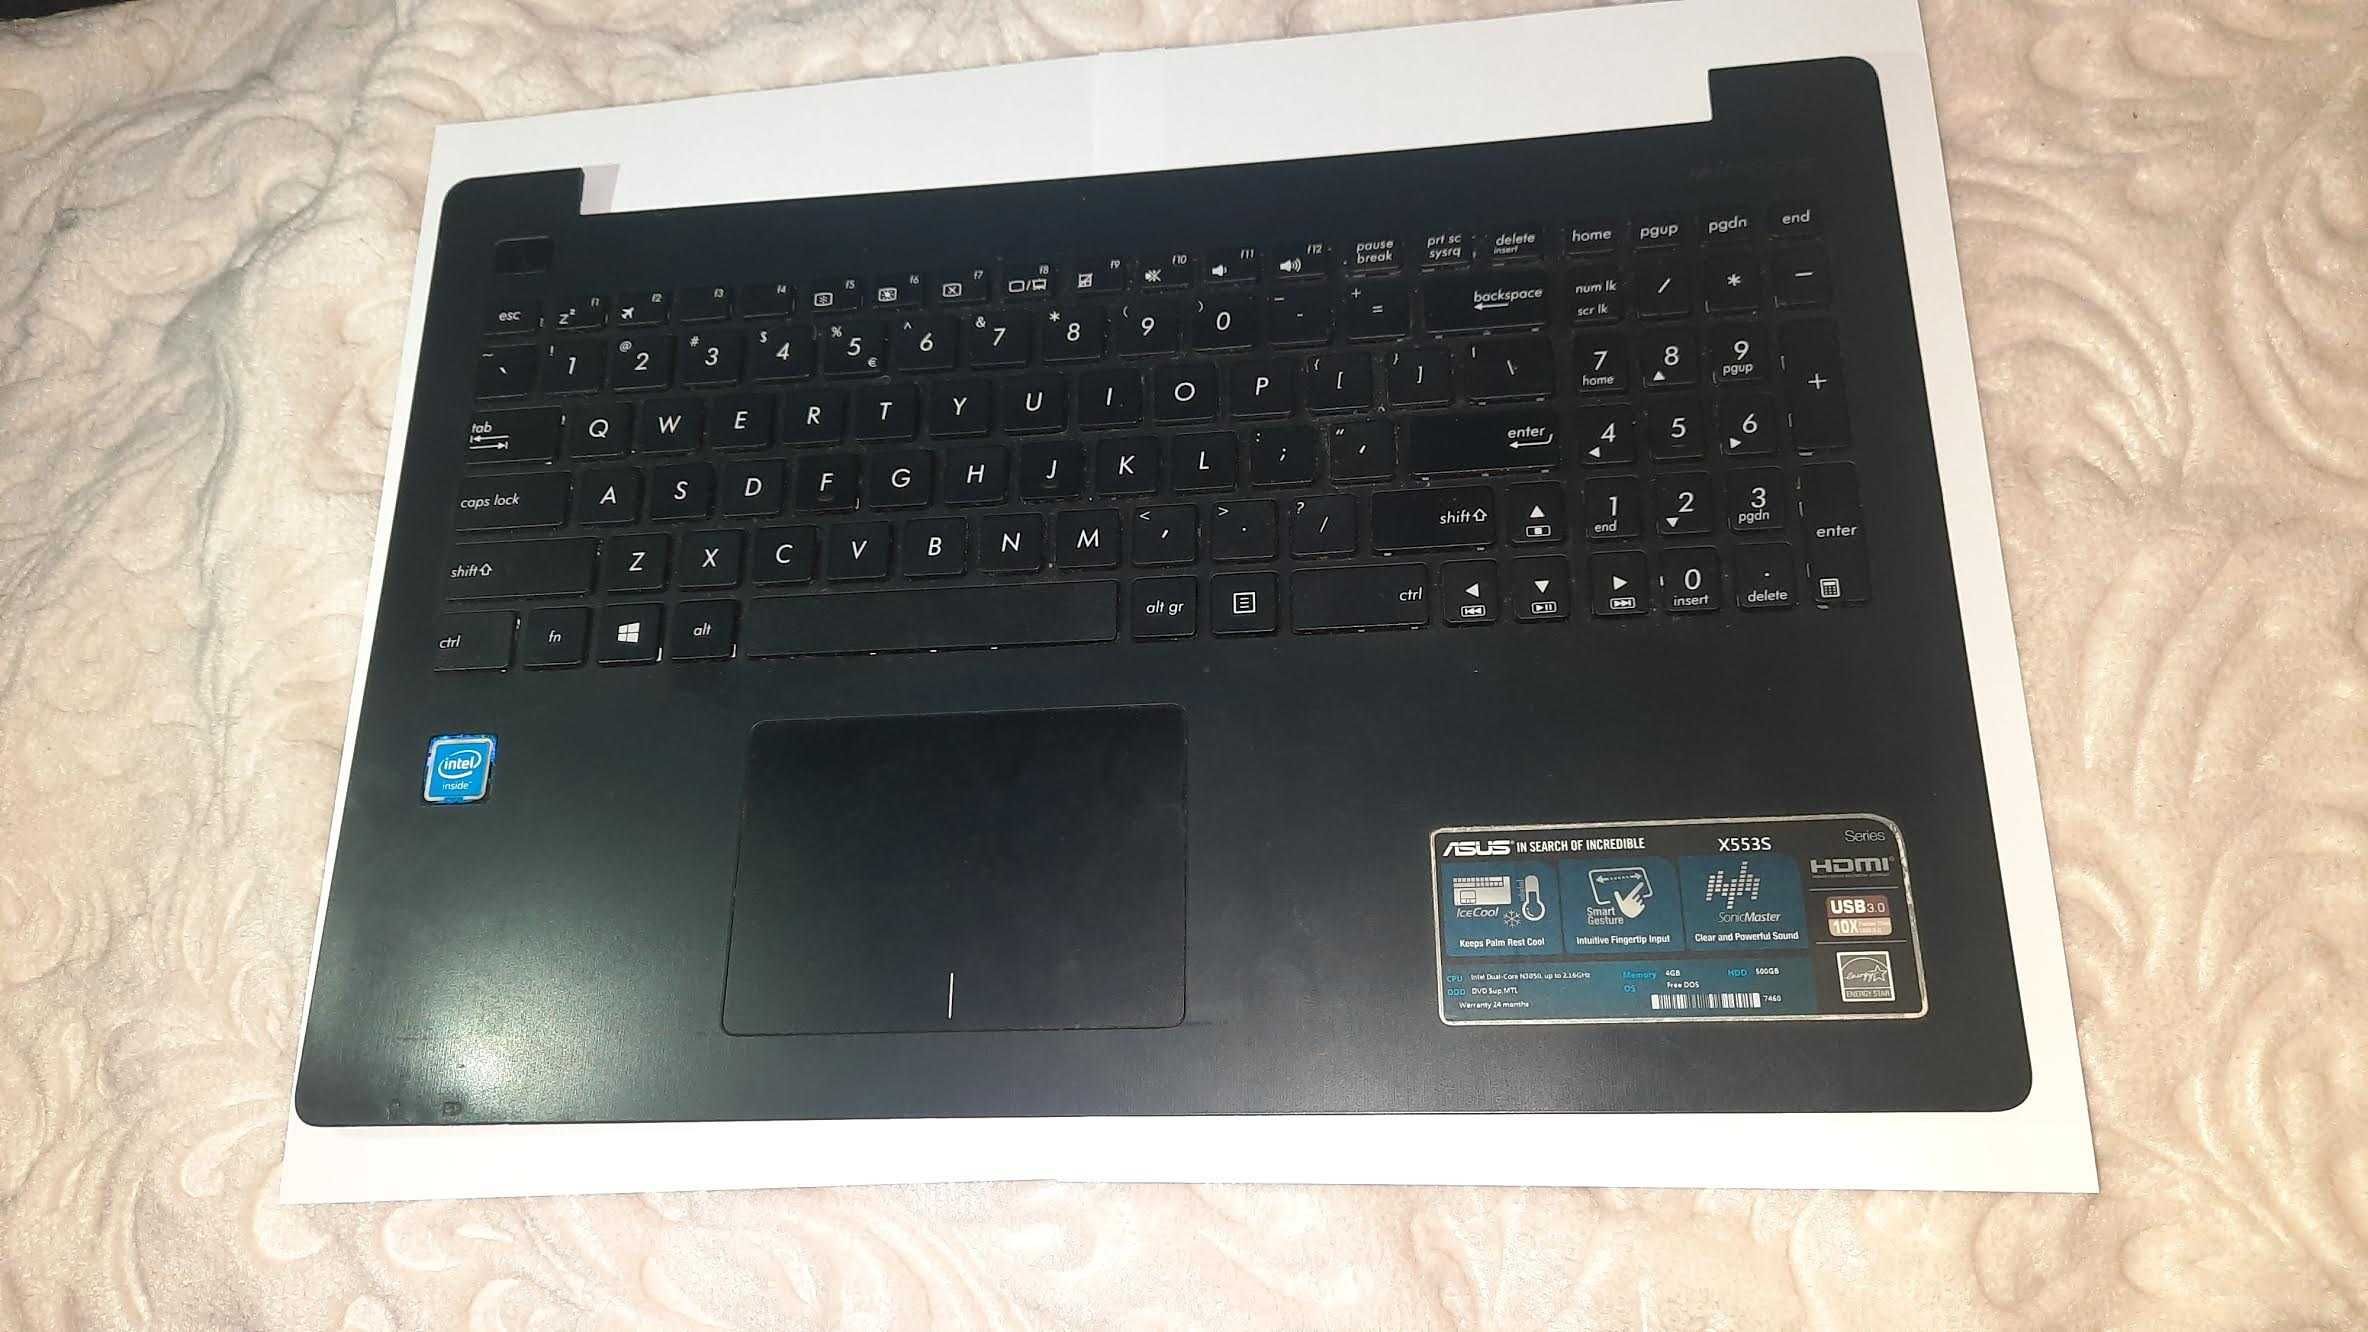 Tastatura Laptop ASUS x553 S / Tastatura ASUS  / Touch PAD Asus x553s